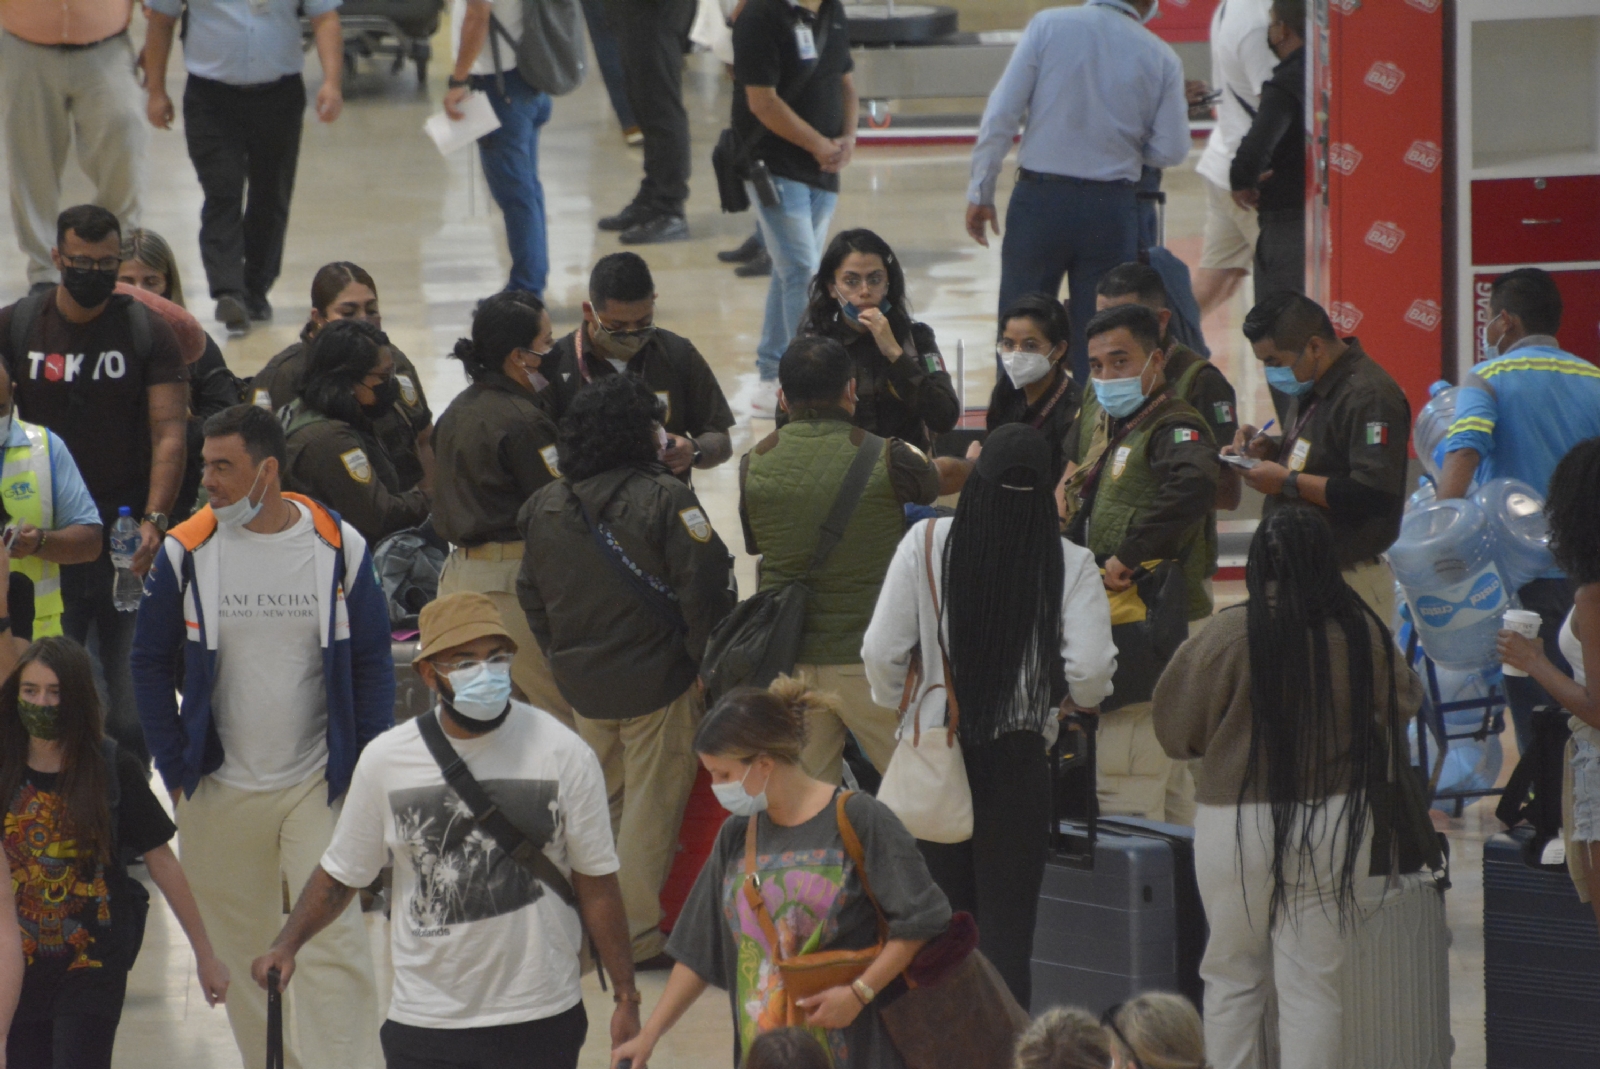 l pasado 14 de octubre, siete agentes de viajes procedentes de Perú fueron rechazados por el Instituto, cuando venían a inspeccionar la oferta turística